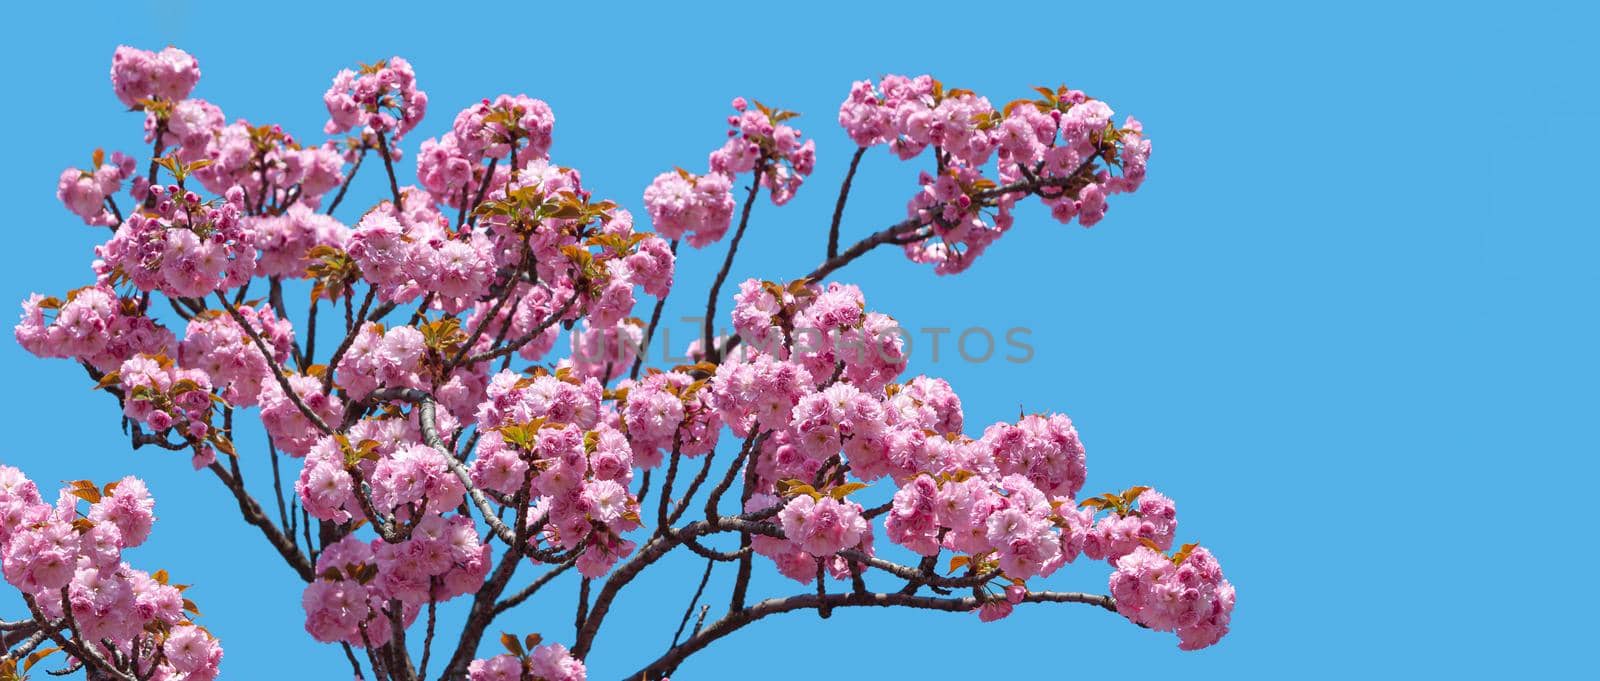 Sakura. Blossomed Japanese cherry trees on blue sky background